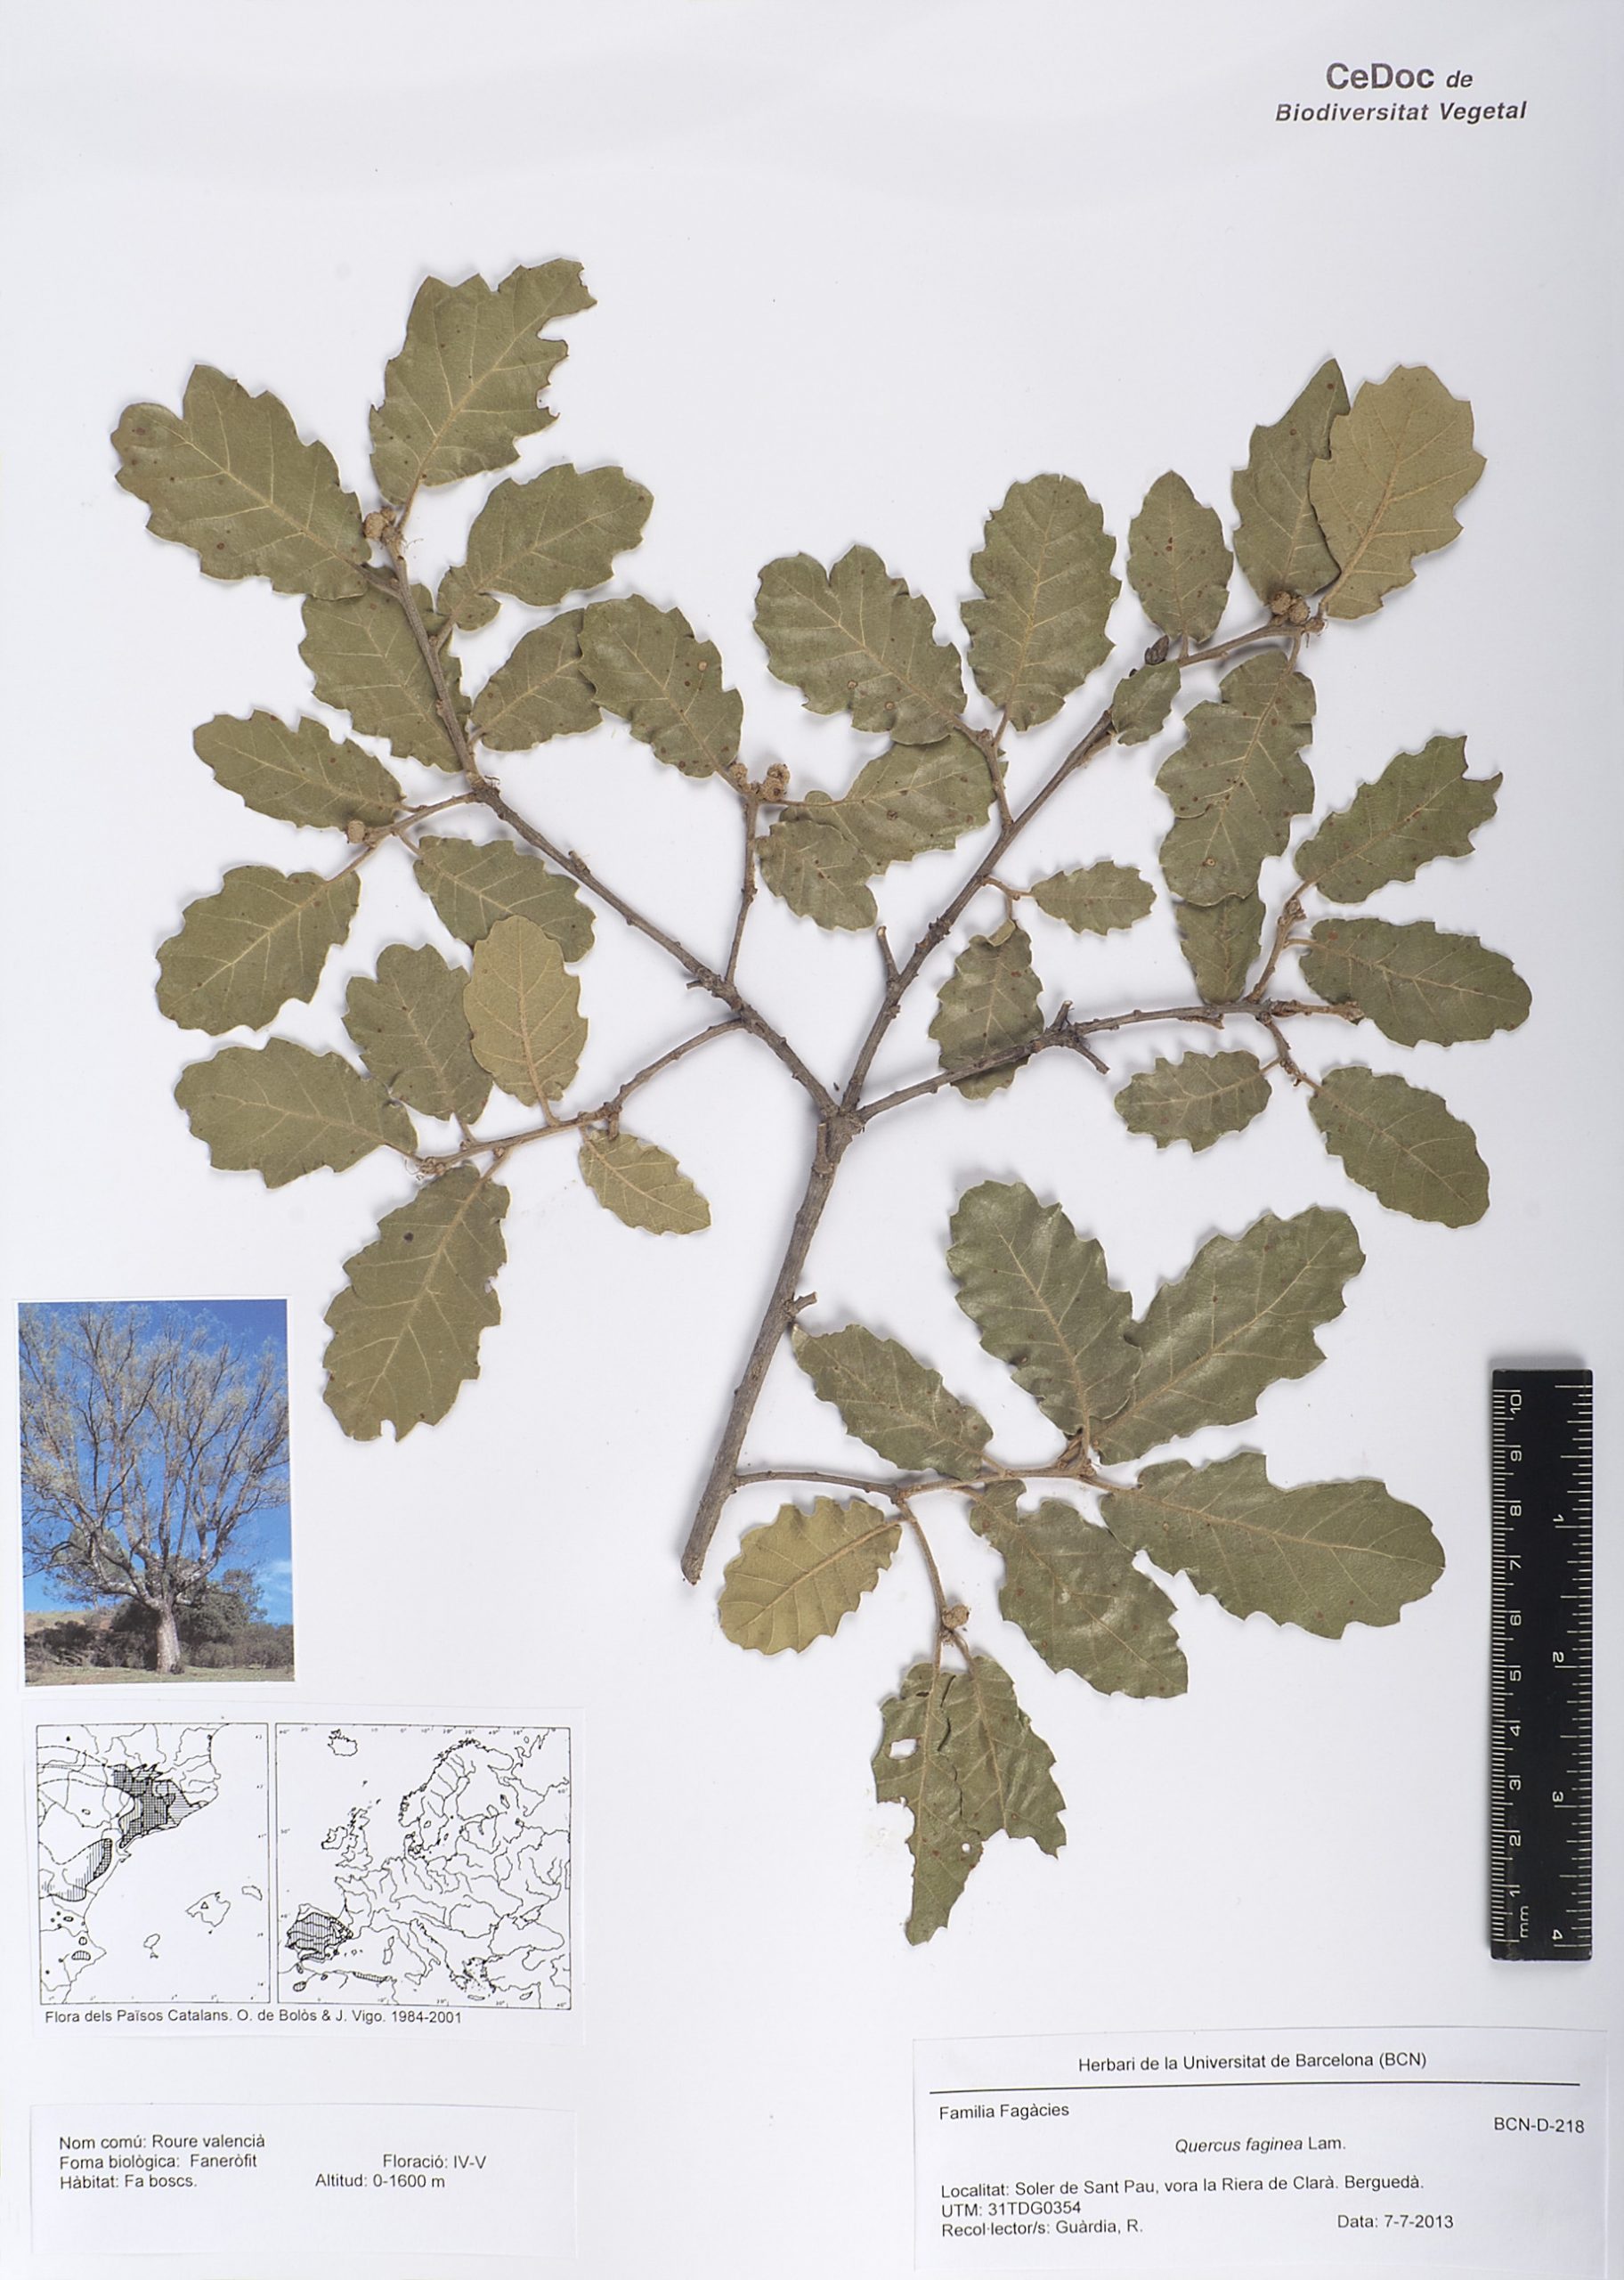 Quercus faginea Lam. (Roure valencià)